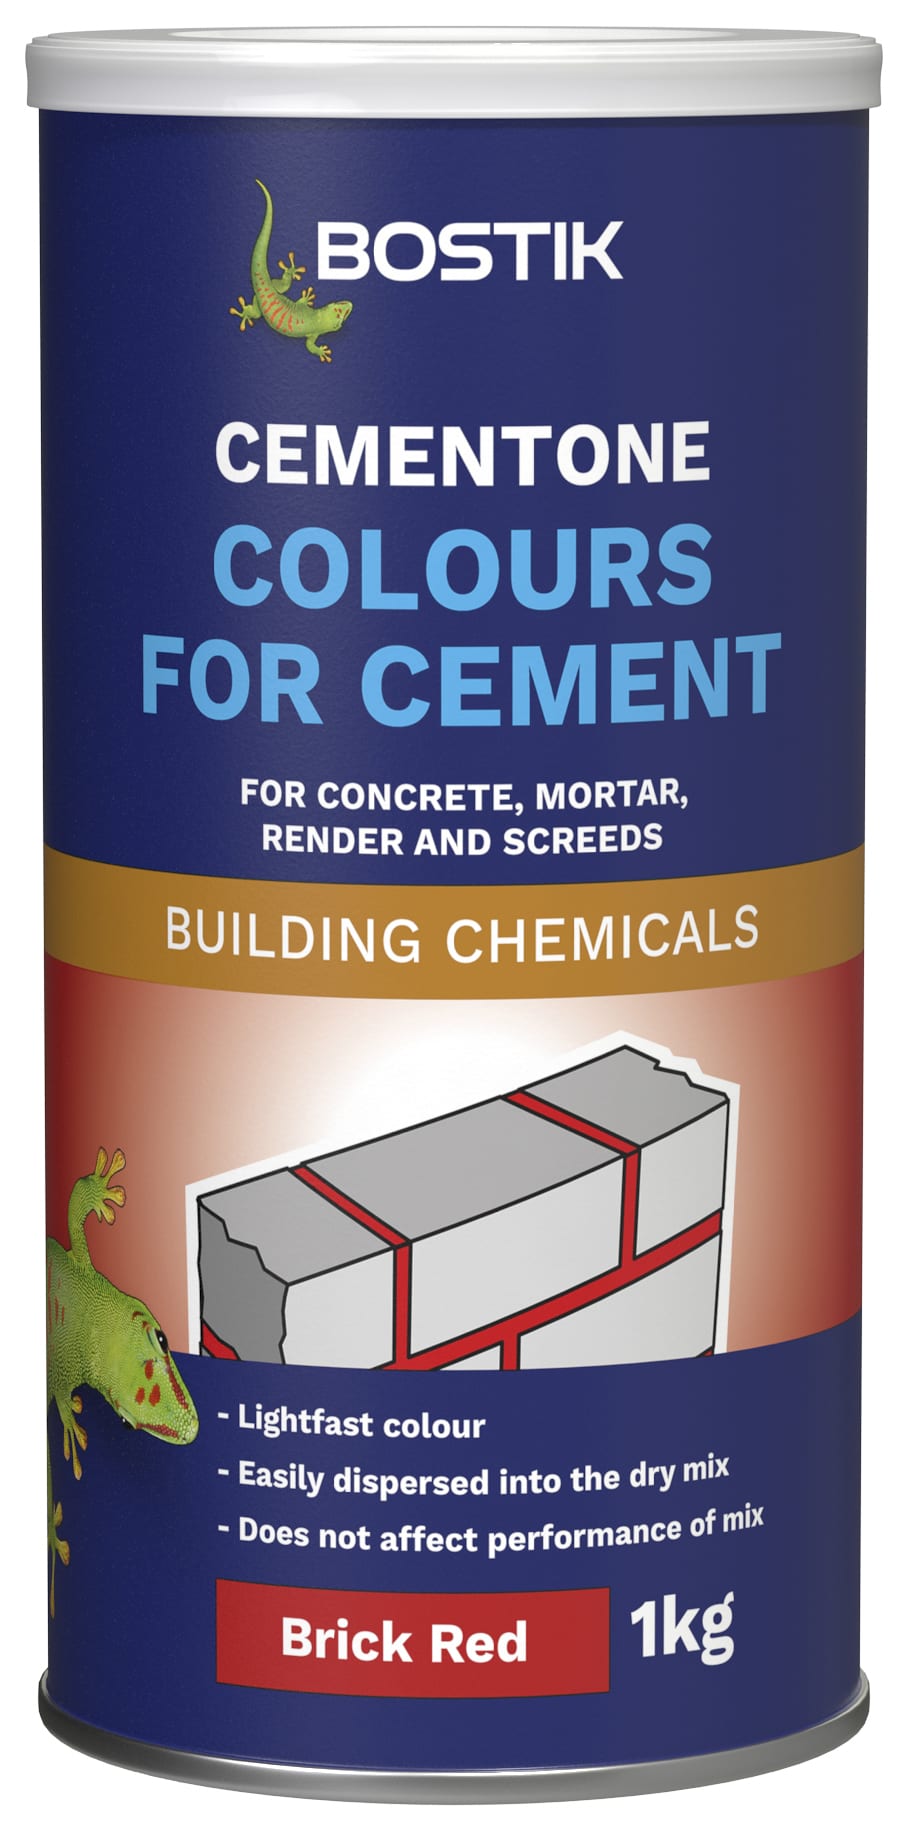 Bostik 1kg Cementone Colours for Cement - Brick